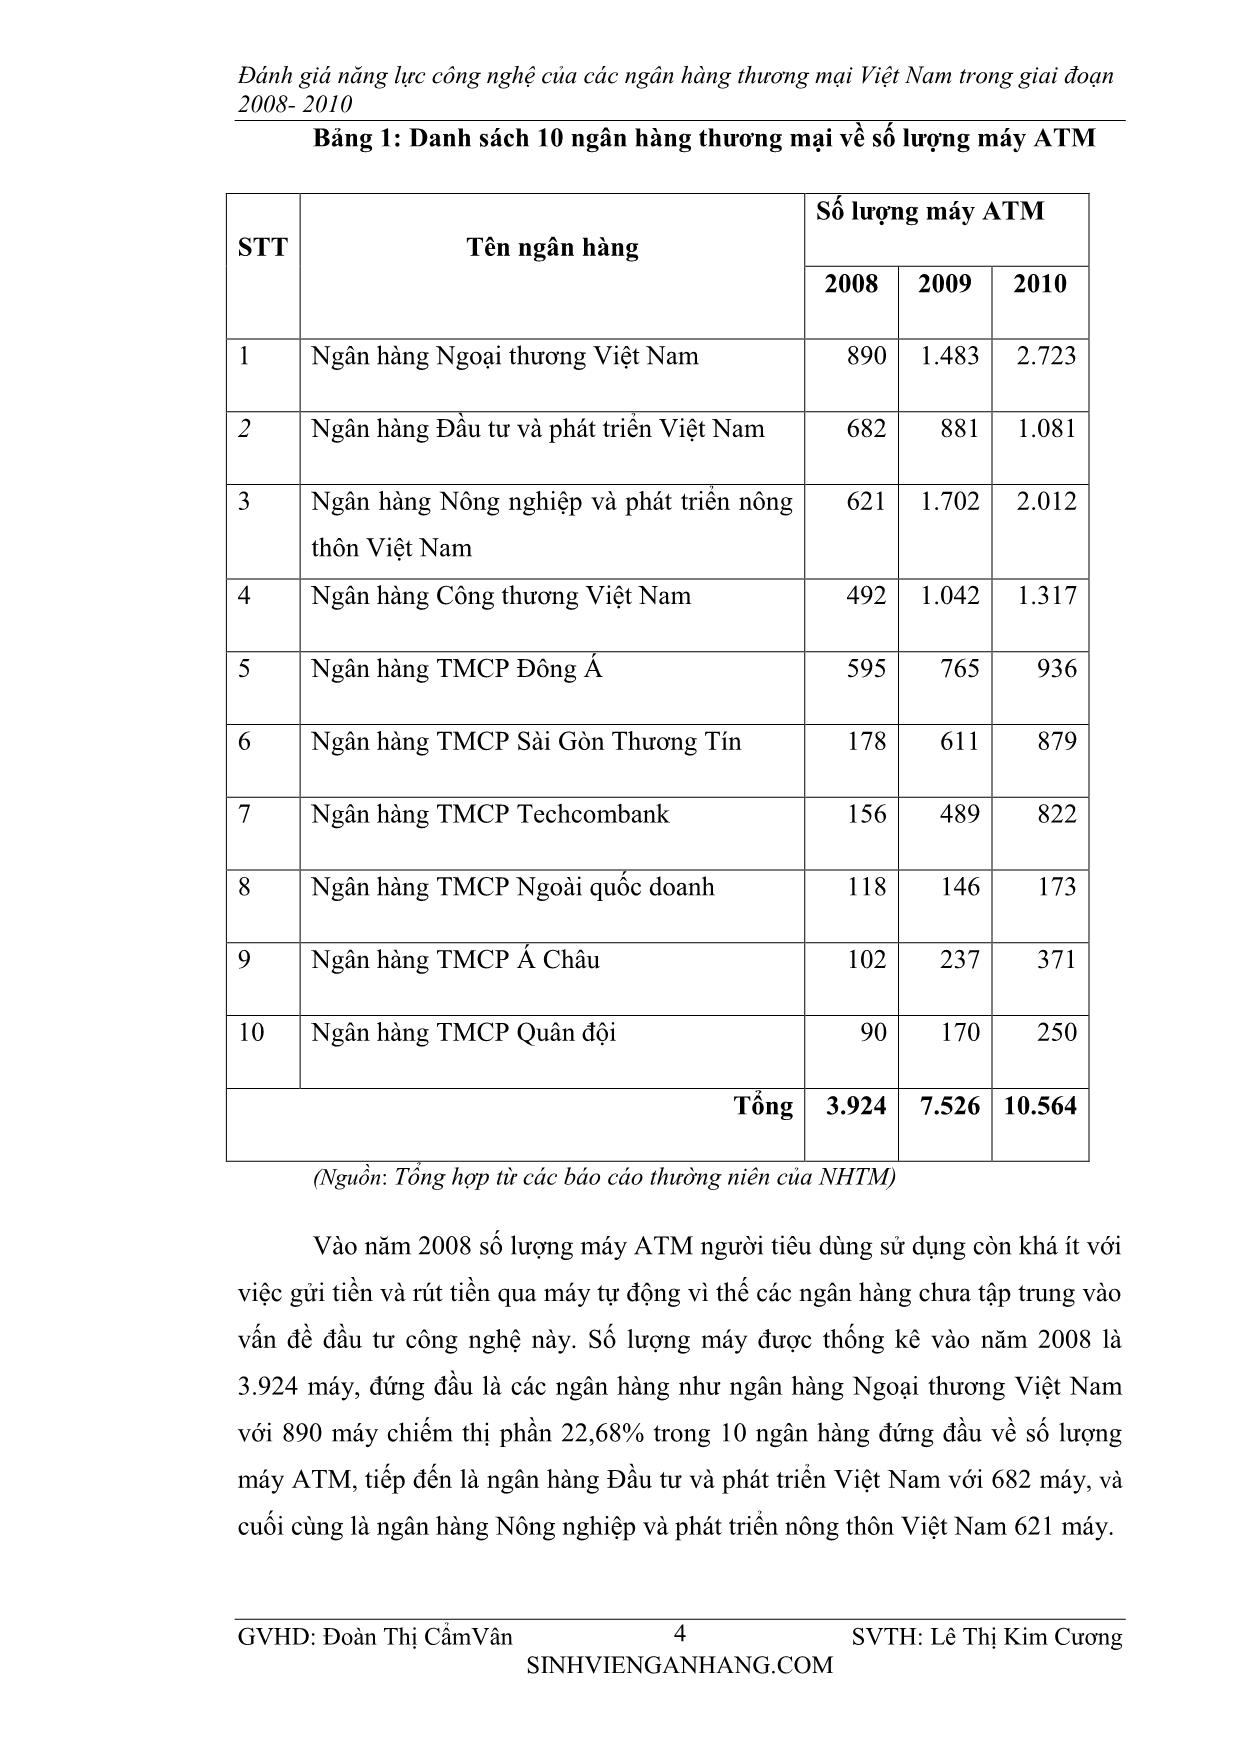 Chuyên đề Đánh giá năng lực cạnh tranh về công nghệ của các ngân hàng thương mại Việt Nam trong giai đoạn 2008-2010 trang 4